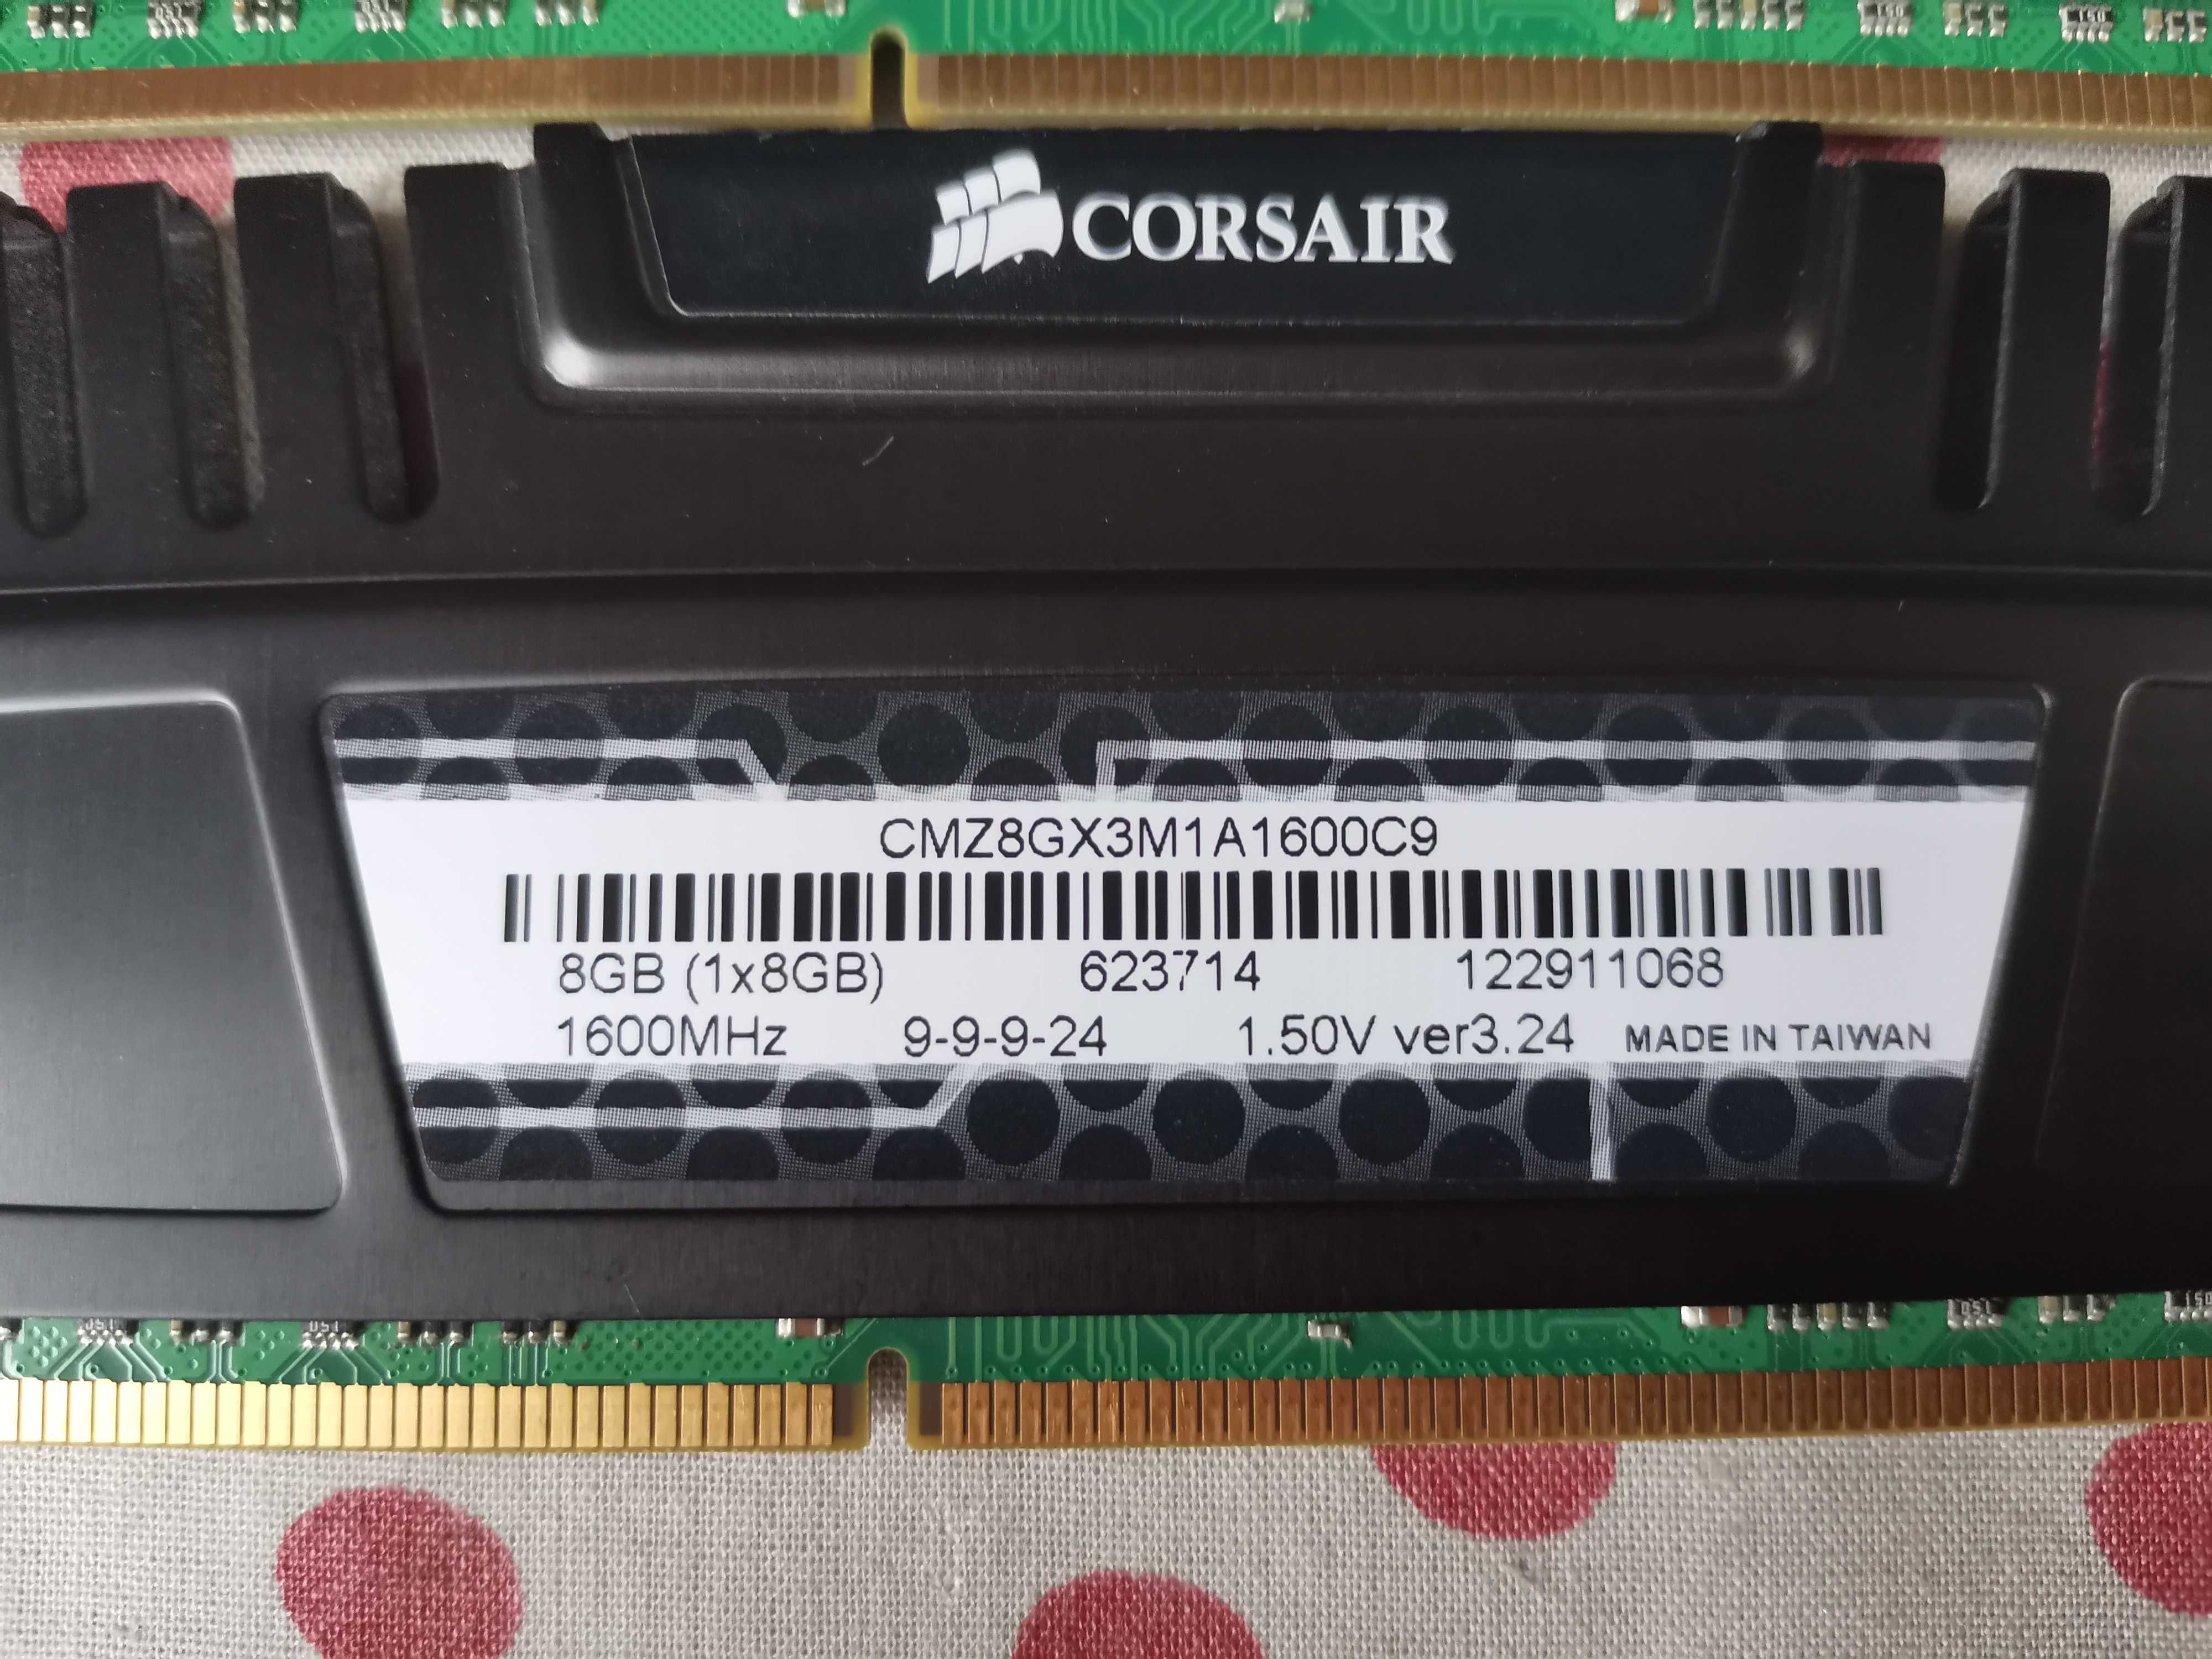 Kit Memorie Ram Corsair Vengeance 16 GB (2X8) 1600 Mhz DDR3 Desktop.